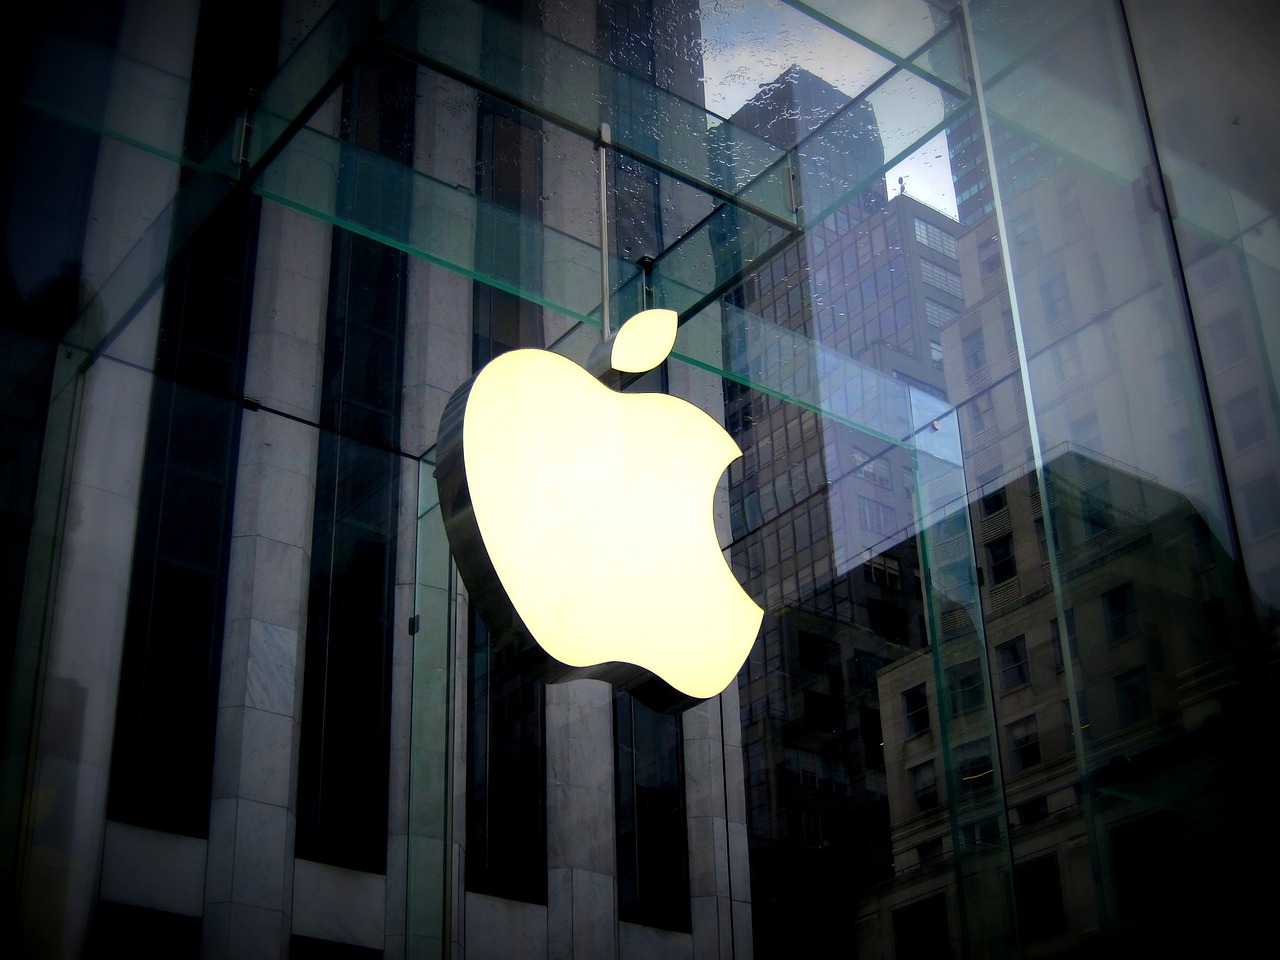 Apple planerar (förmodligen) lansering av nya iPads och MacBooks denna vecka